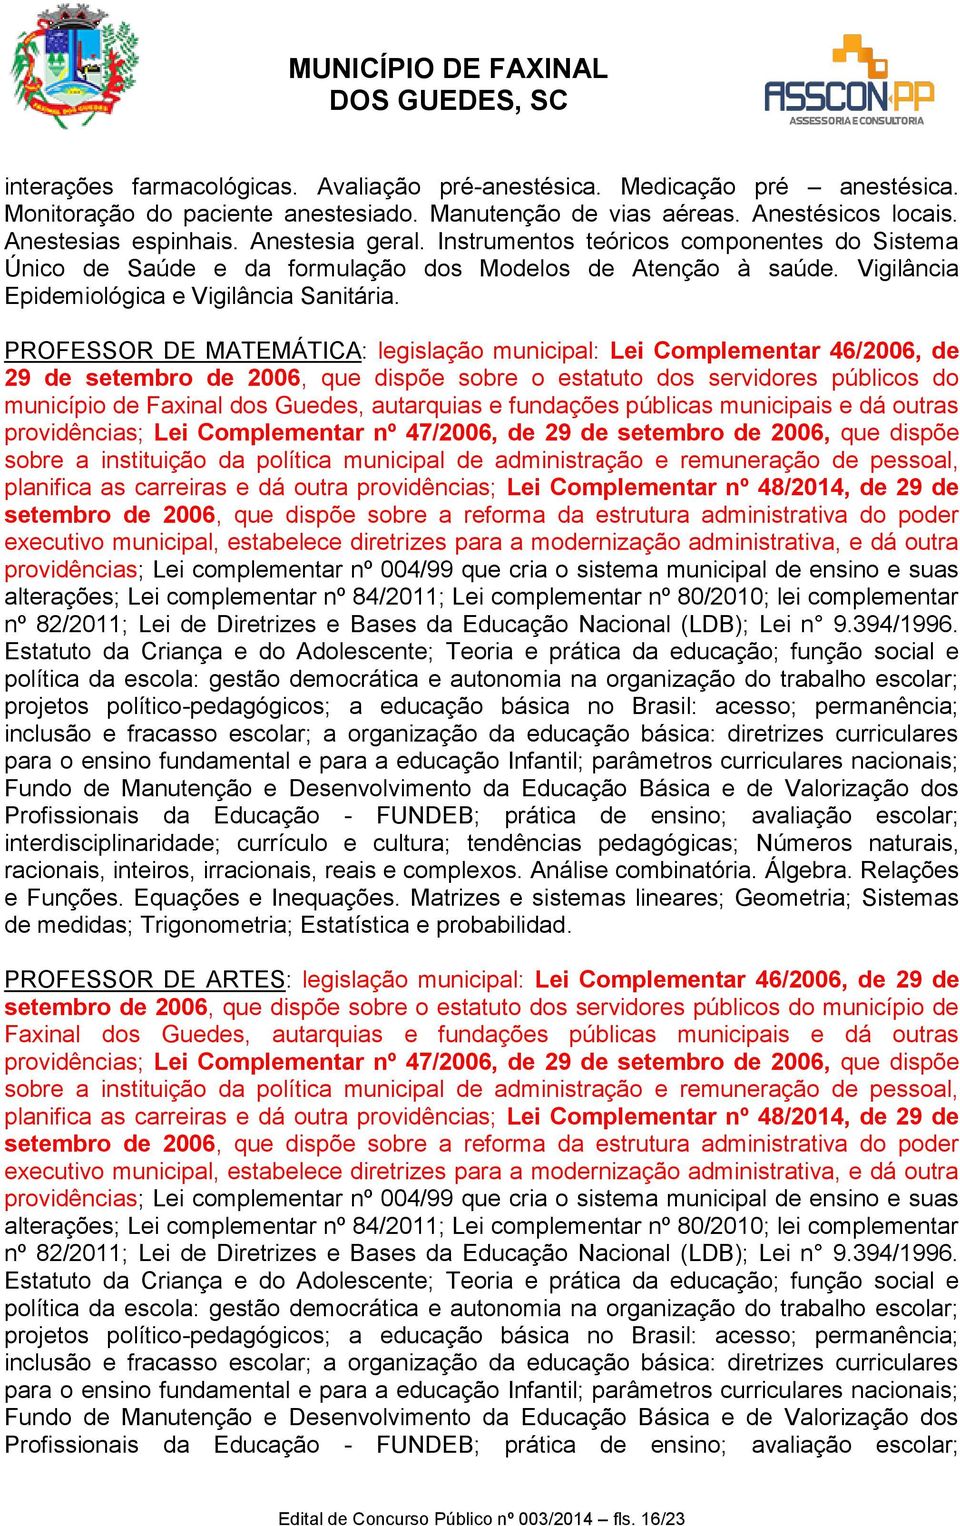 PROFESSOR DE MATEMÁTICA: legislação municipal: Lei Complementar 46/2006, de 29 de setembro de 2006, que dispõe sobre o estatuto dos servidores públicos do município de Faxinal dos Guedes, autarquias